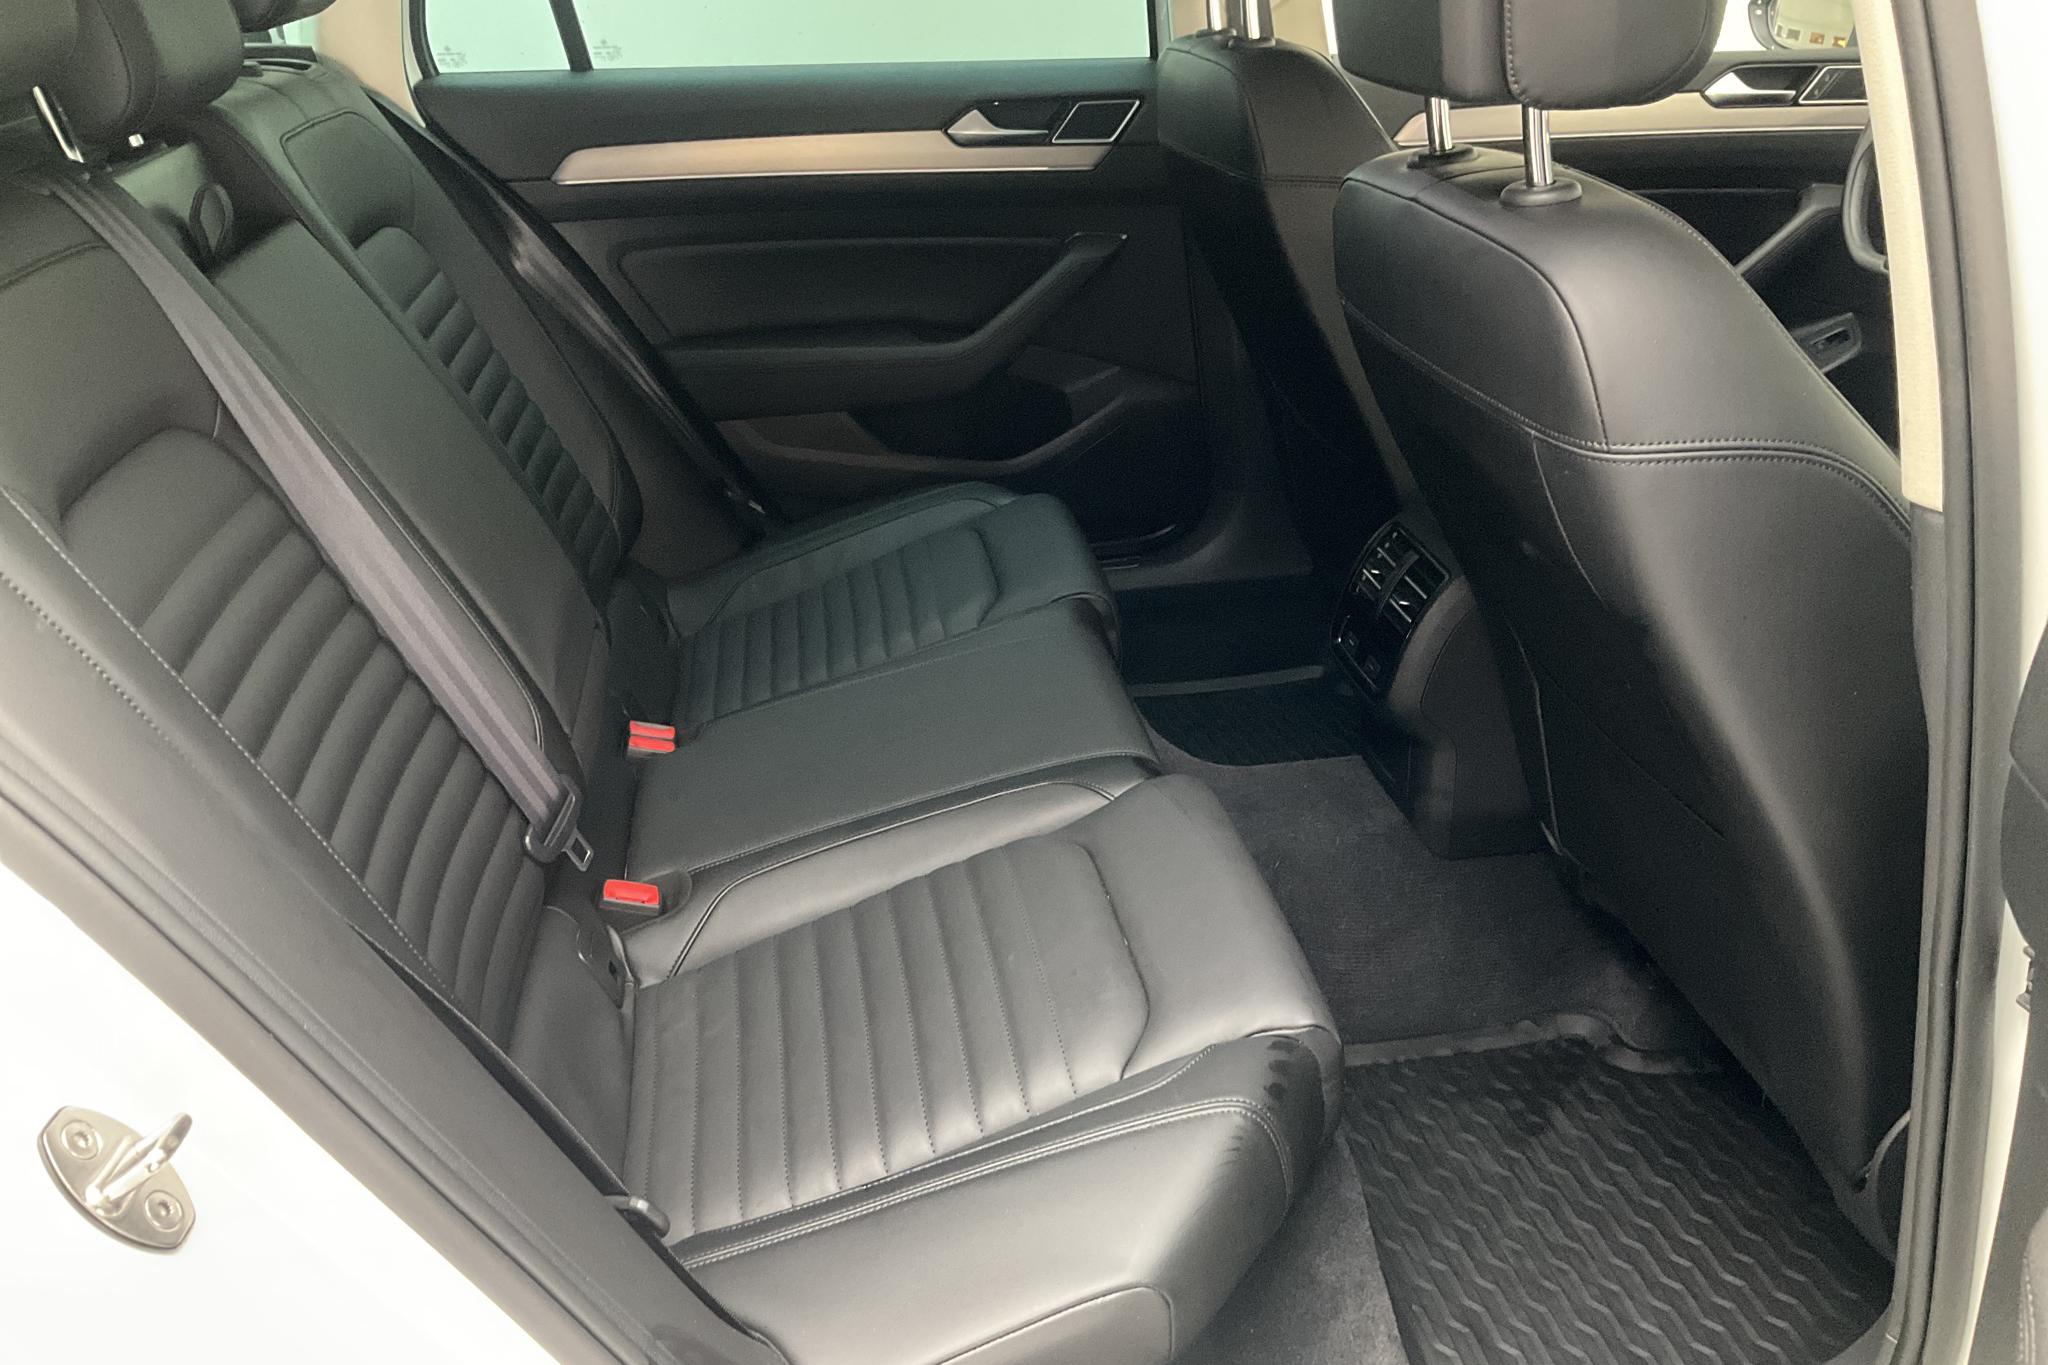 VW Passat 2.0 TDI Sportscombi 4MOTION (190hk) - 16 206 mil - Automat - vit - 2018